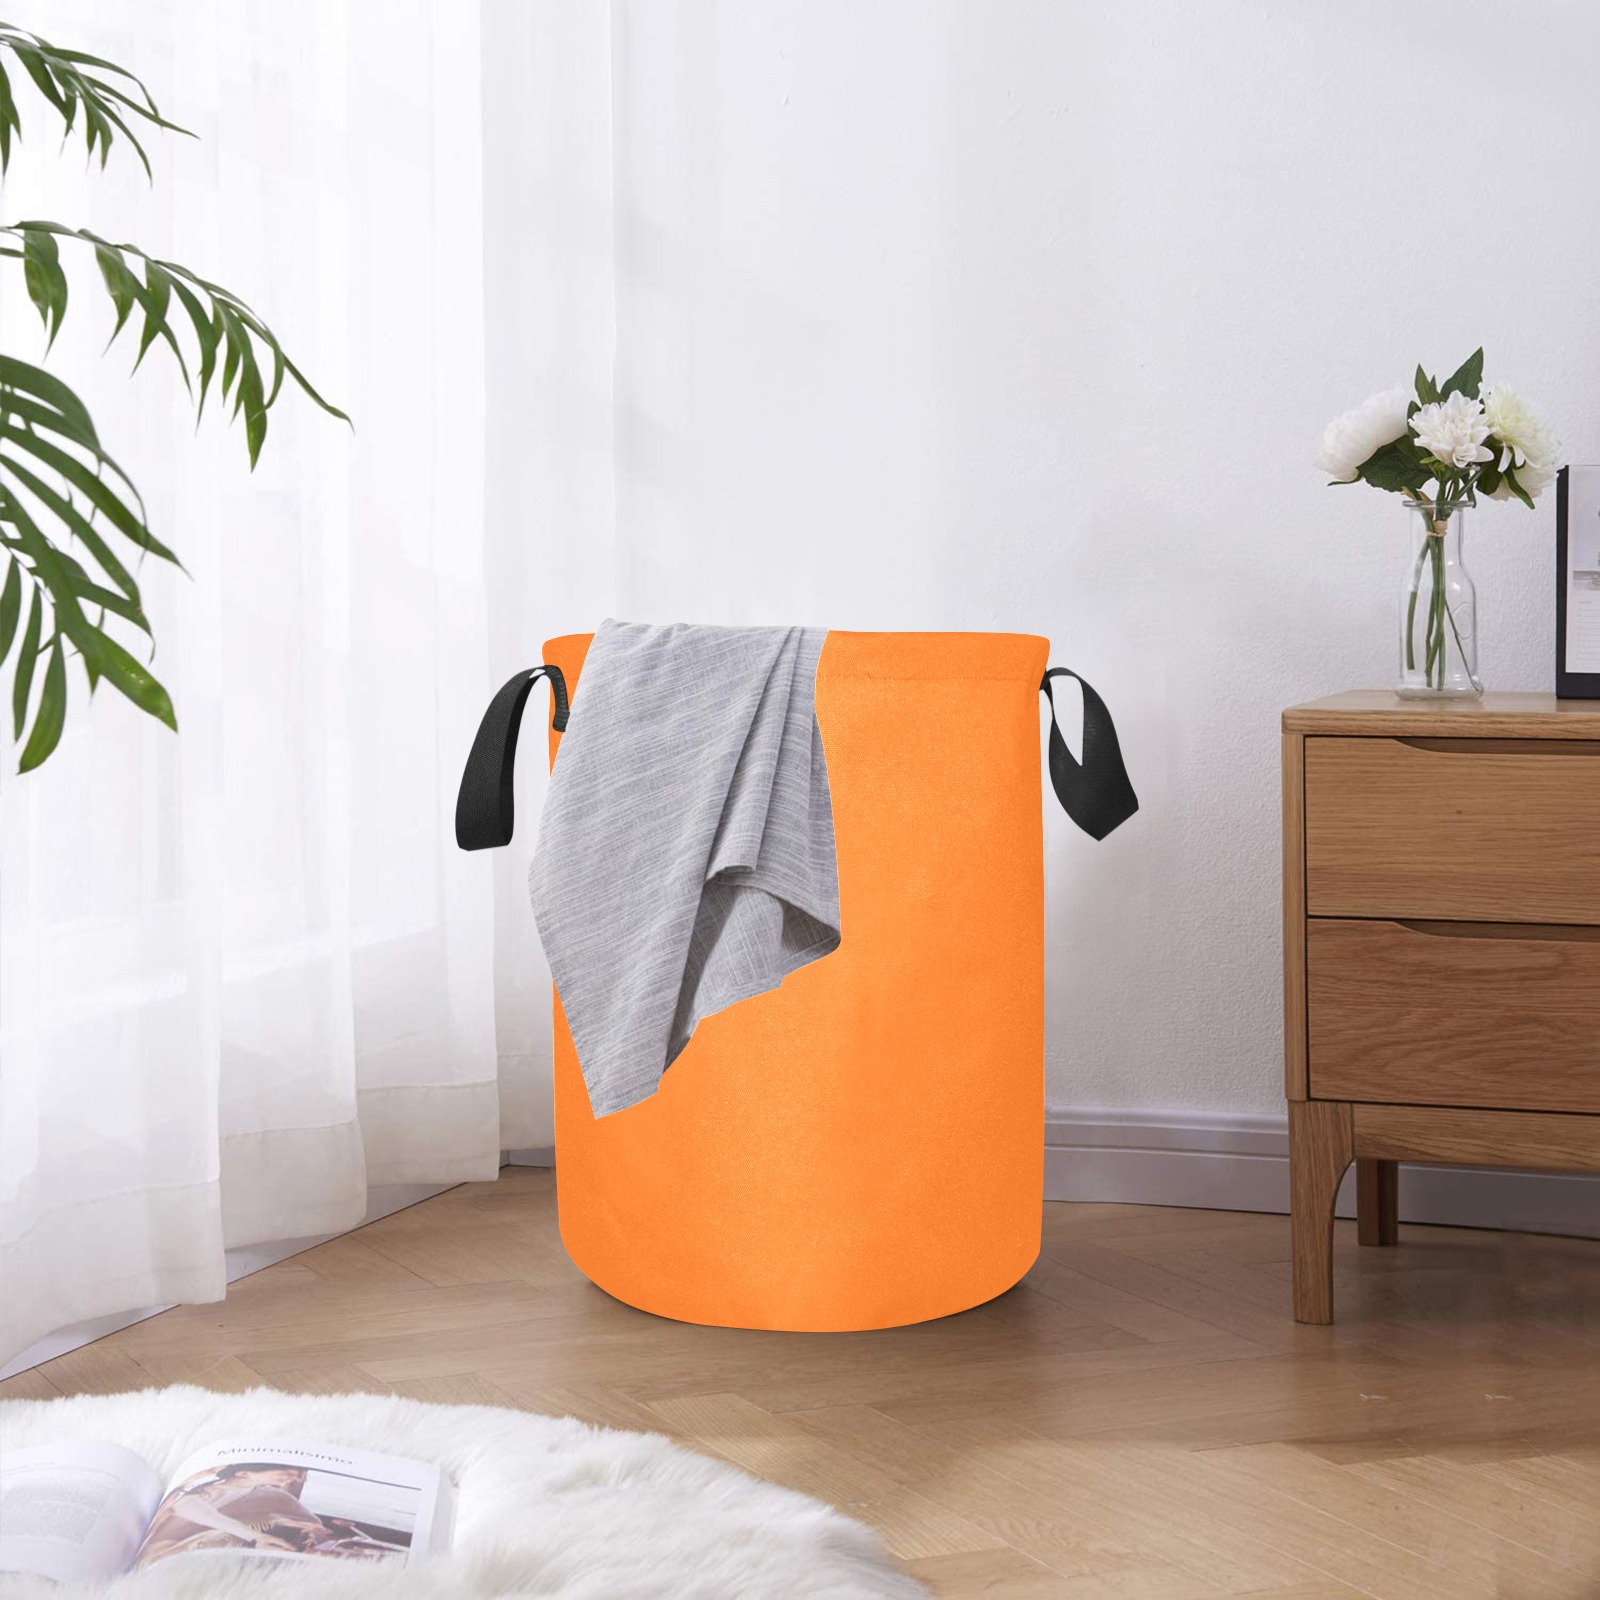 color pumpkin Laundry Bag (Small)